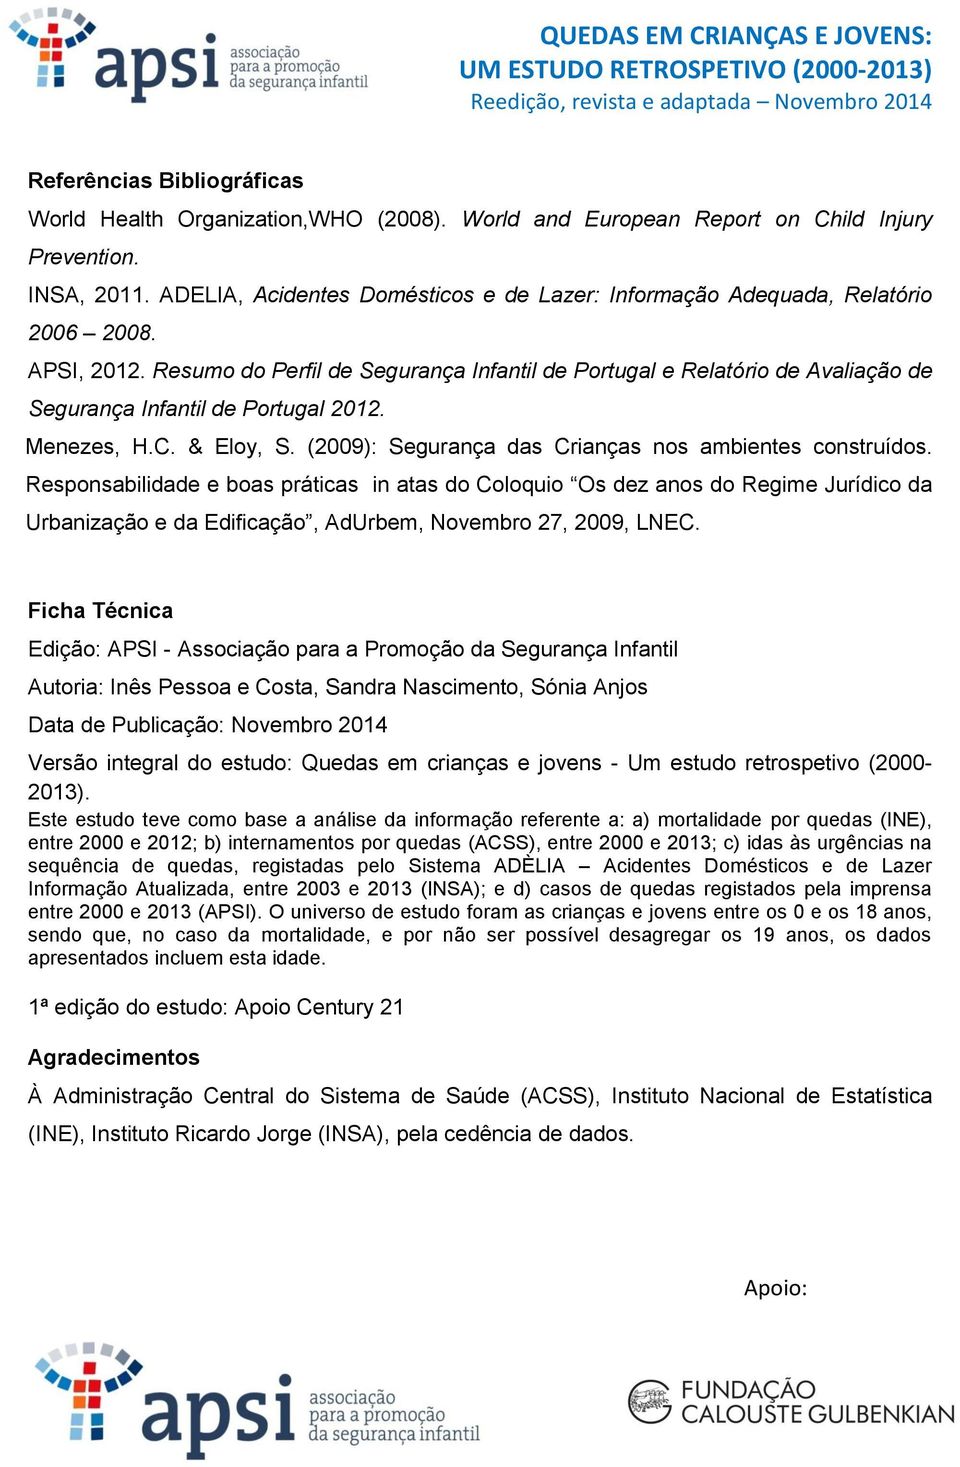 Resumo do Perfil de Segurança Infantil de Portugal e Relatório de Avaliação de Segurança Infantil de Portugal 2012. Menezes, H.C. & Eloy, S. (2009): Segurança das Crianças nos ambientes construídos.